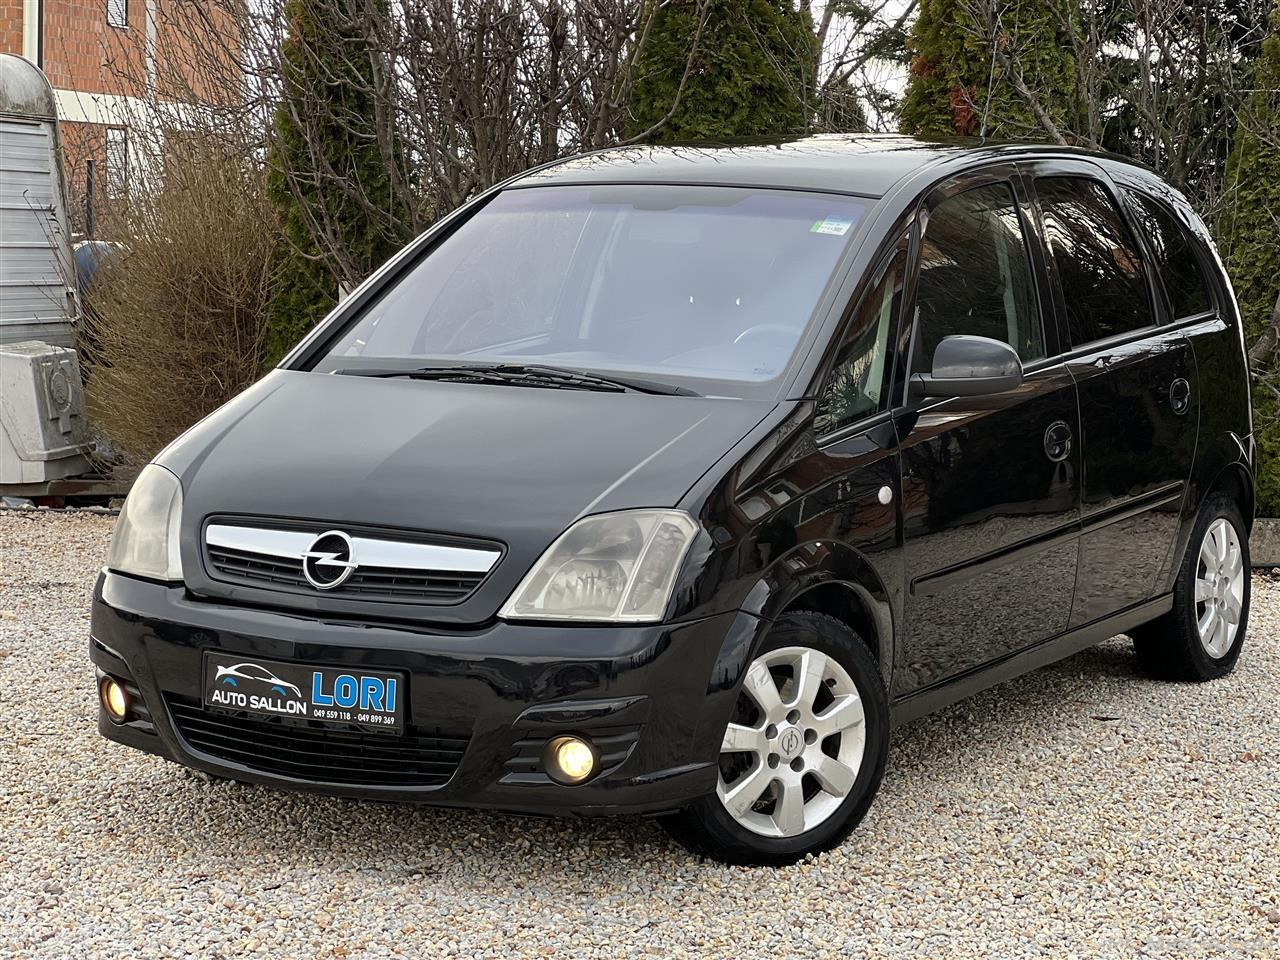 Opel Meriva Dizel 1.7 Rks 6 Muj viti 2006 info 049559118